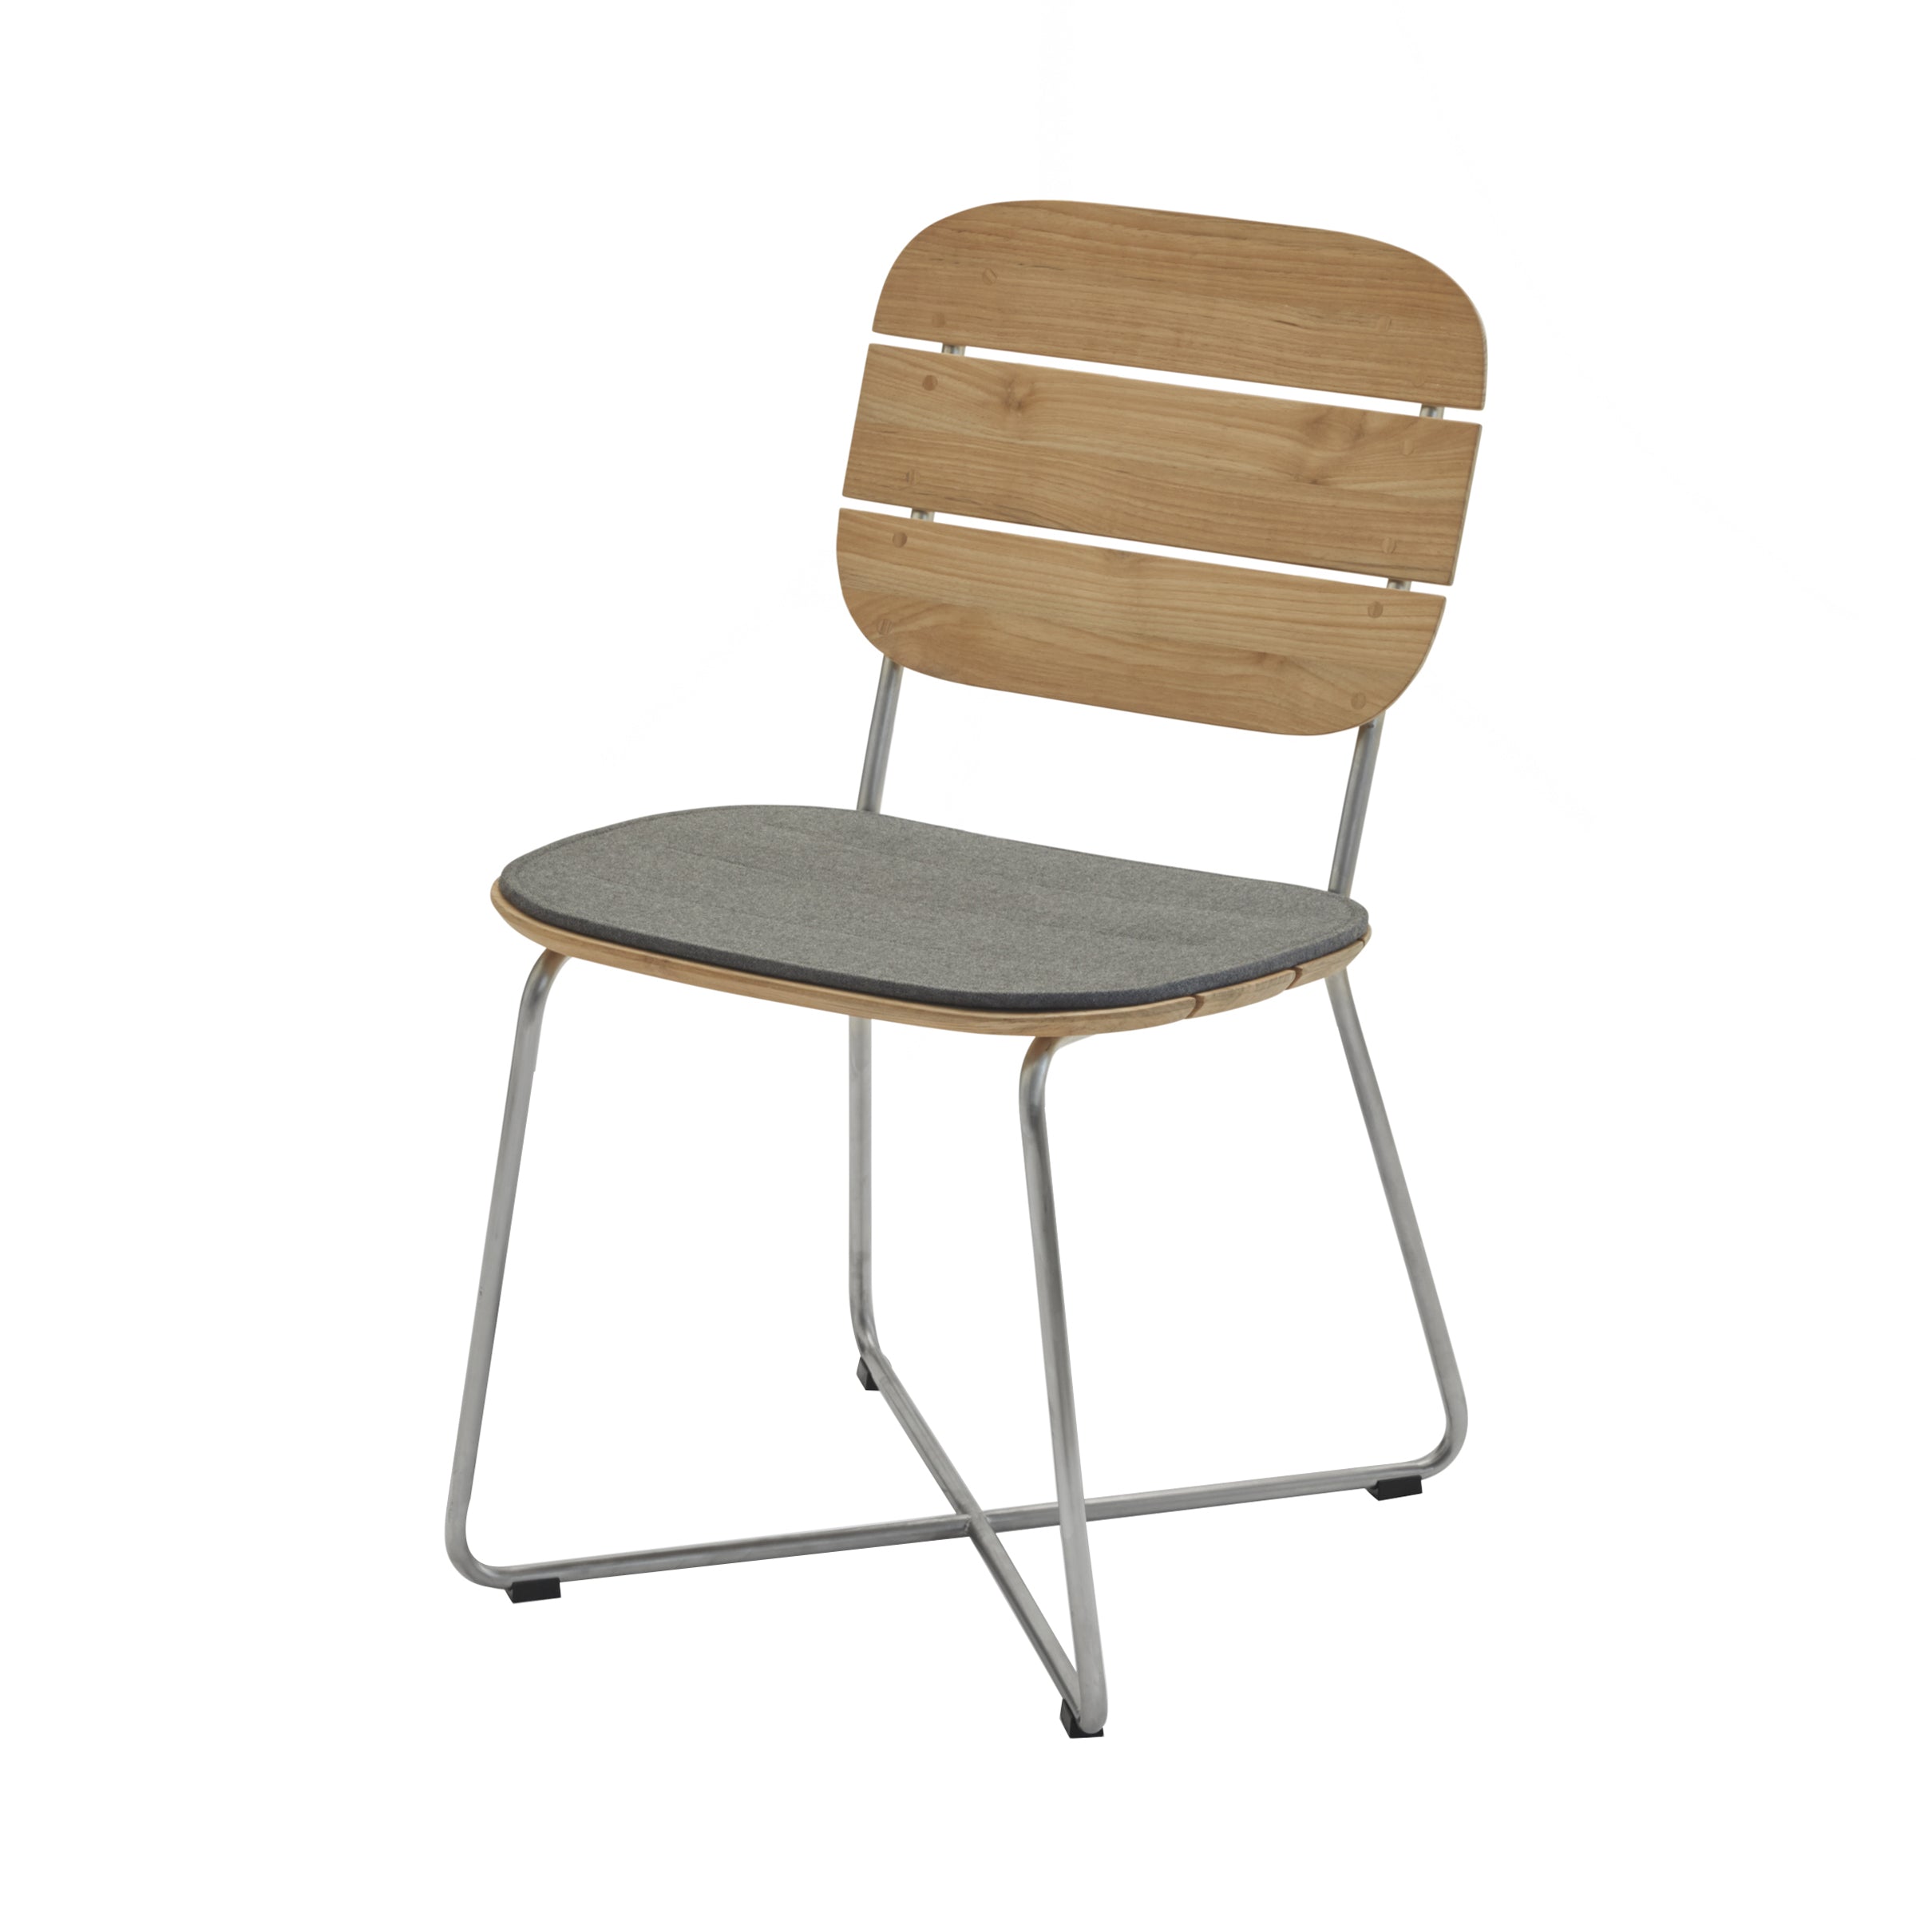 Lilium Chair: Charcoal Cushion